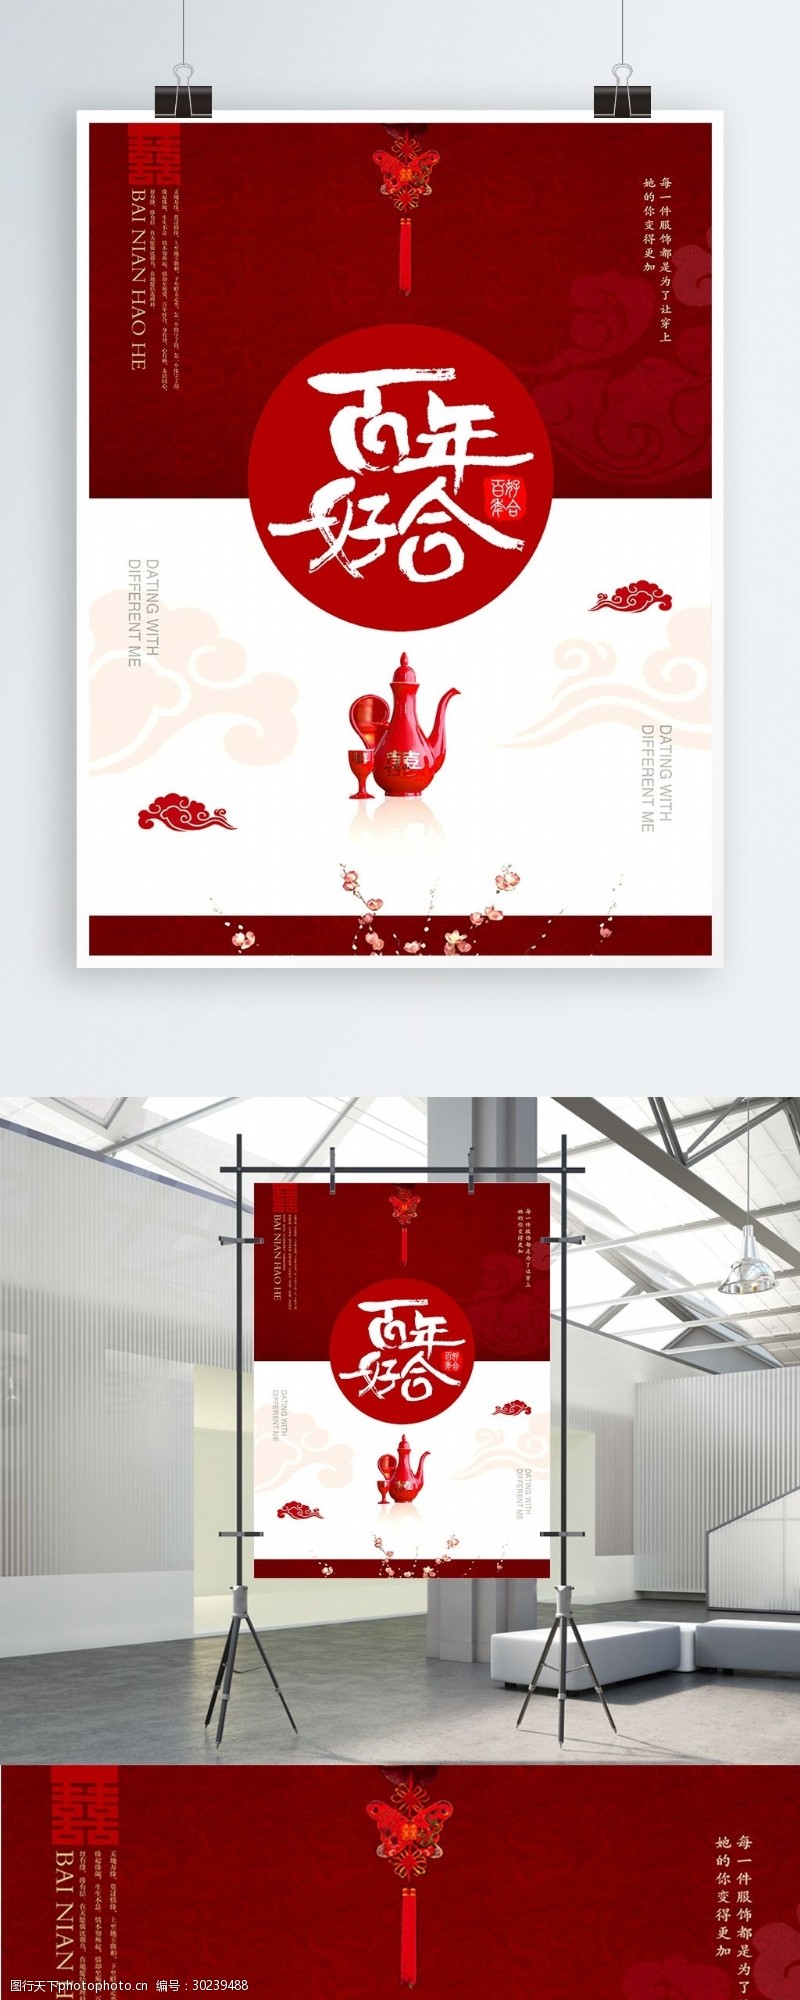 文字排版创意红白相间喜庆新婚宴会百年好合海报设计